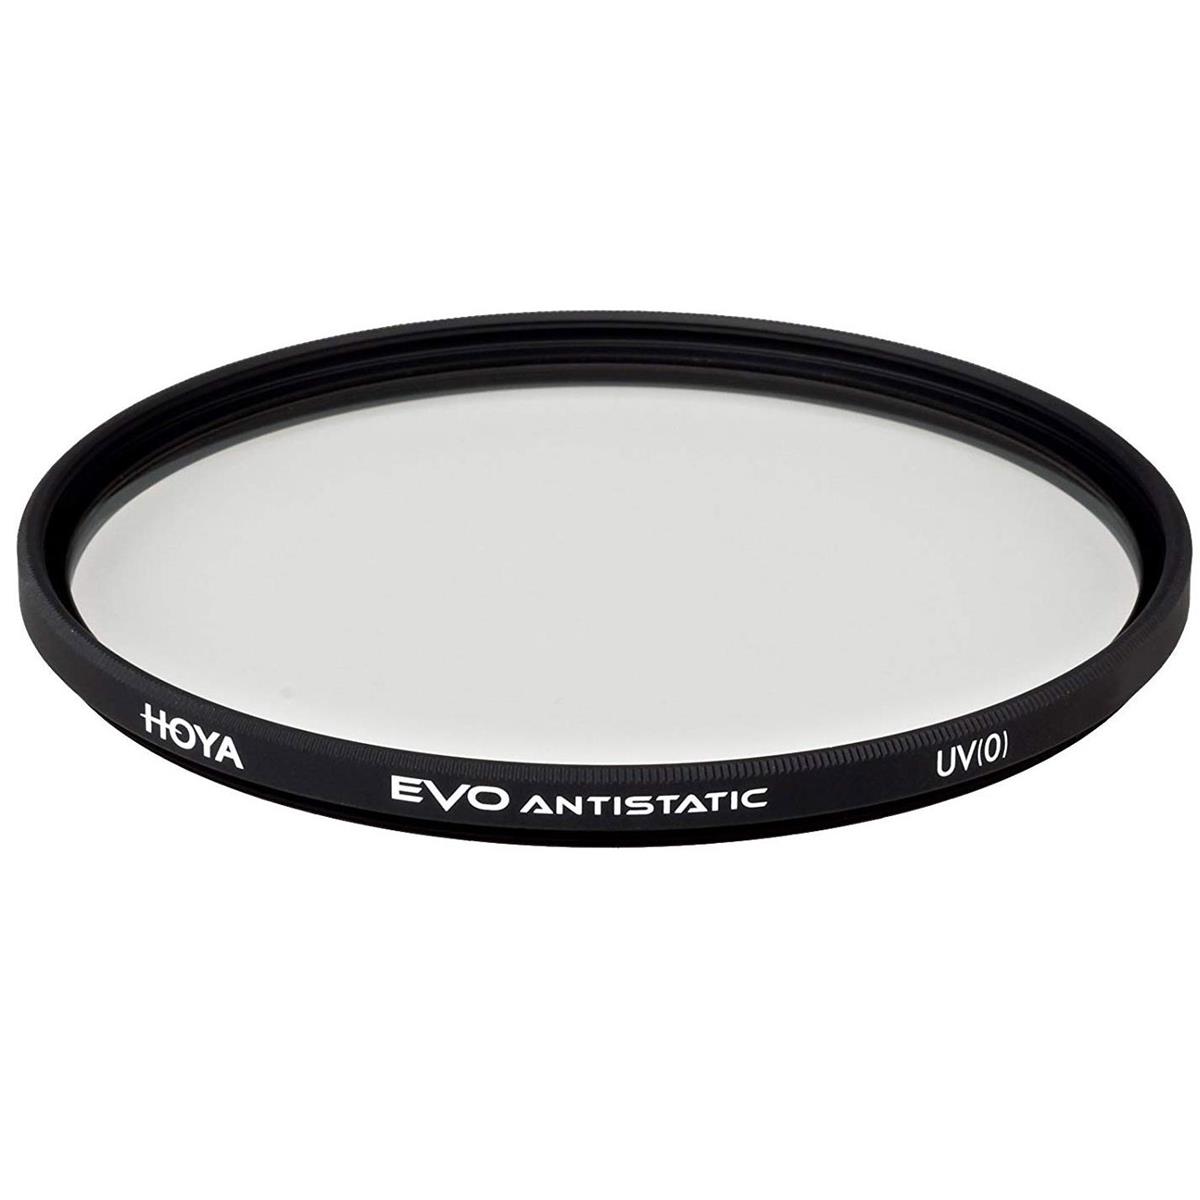 Hoya Evo Antistatic UV Filter - 67mm